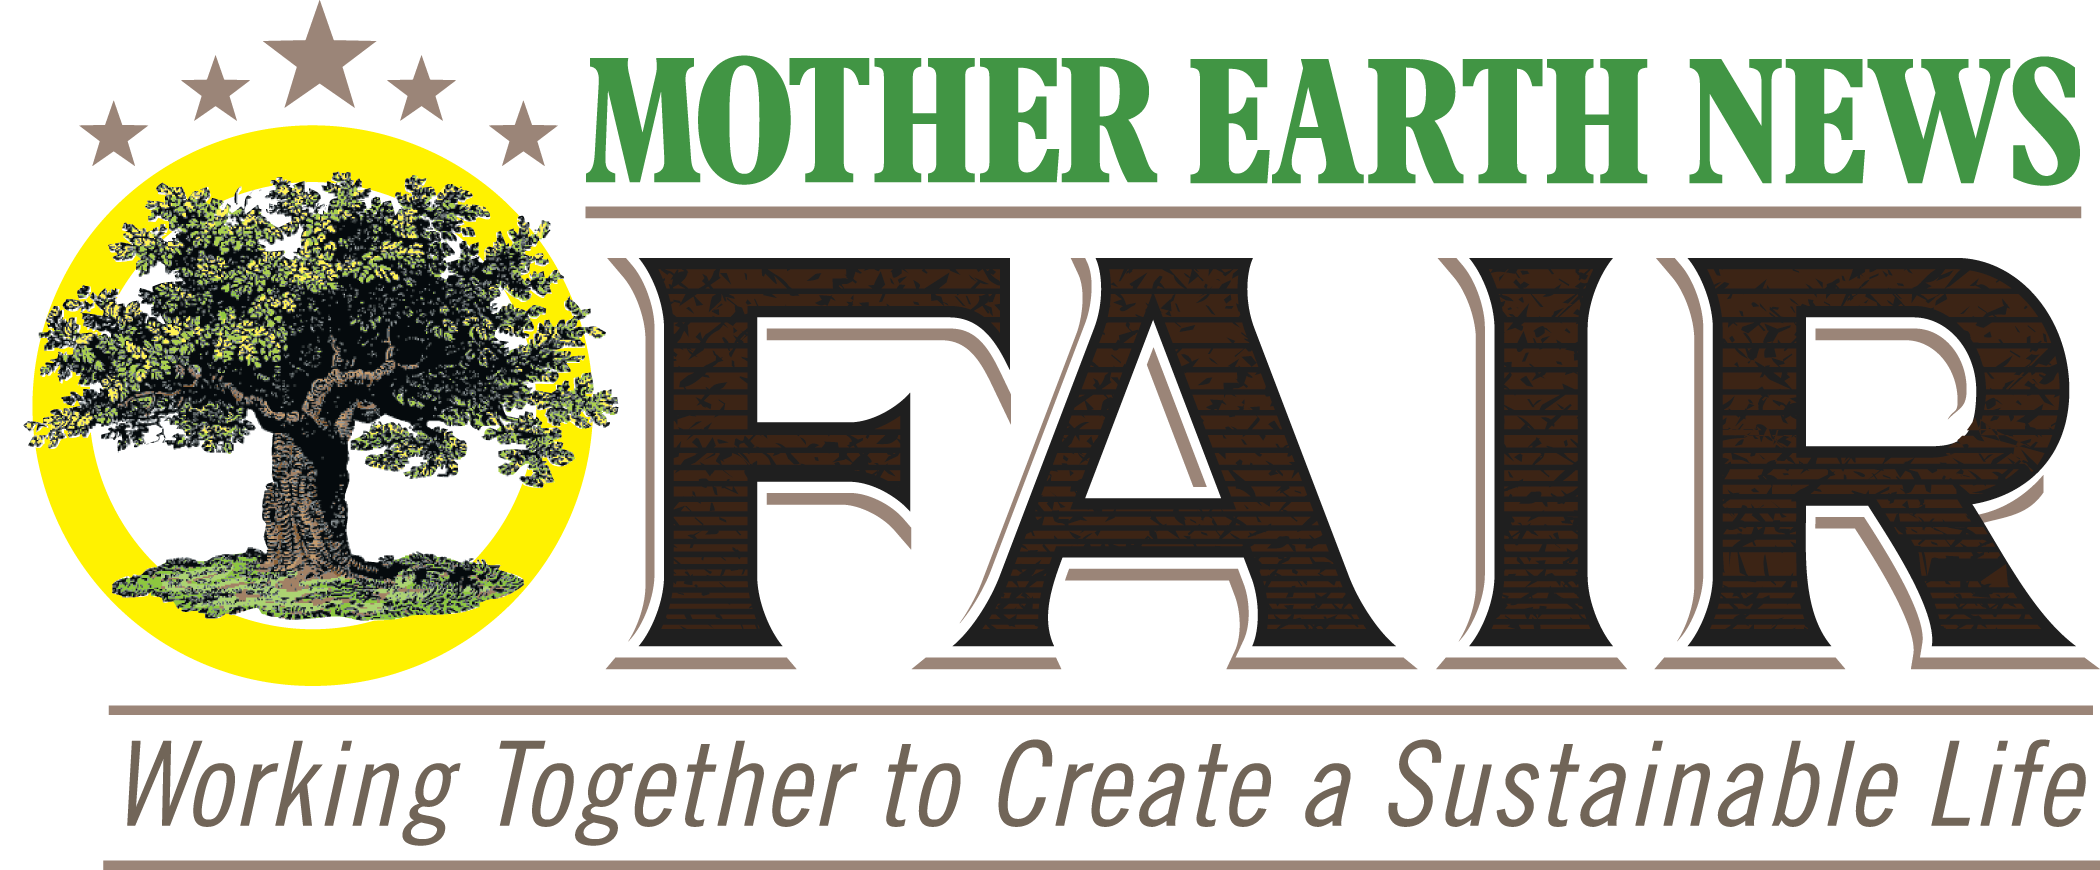 Mother Earth News Fair